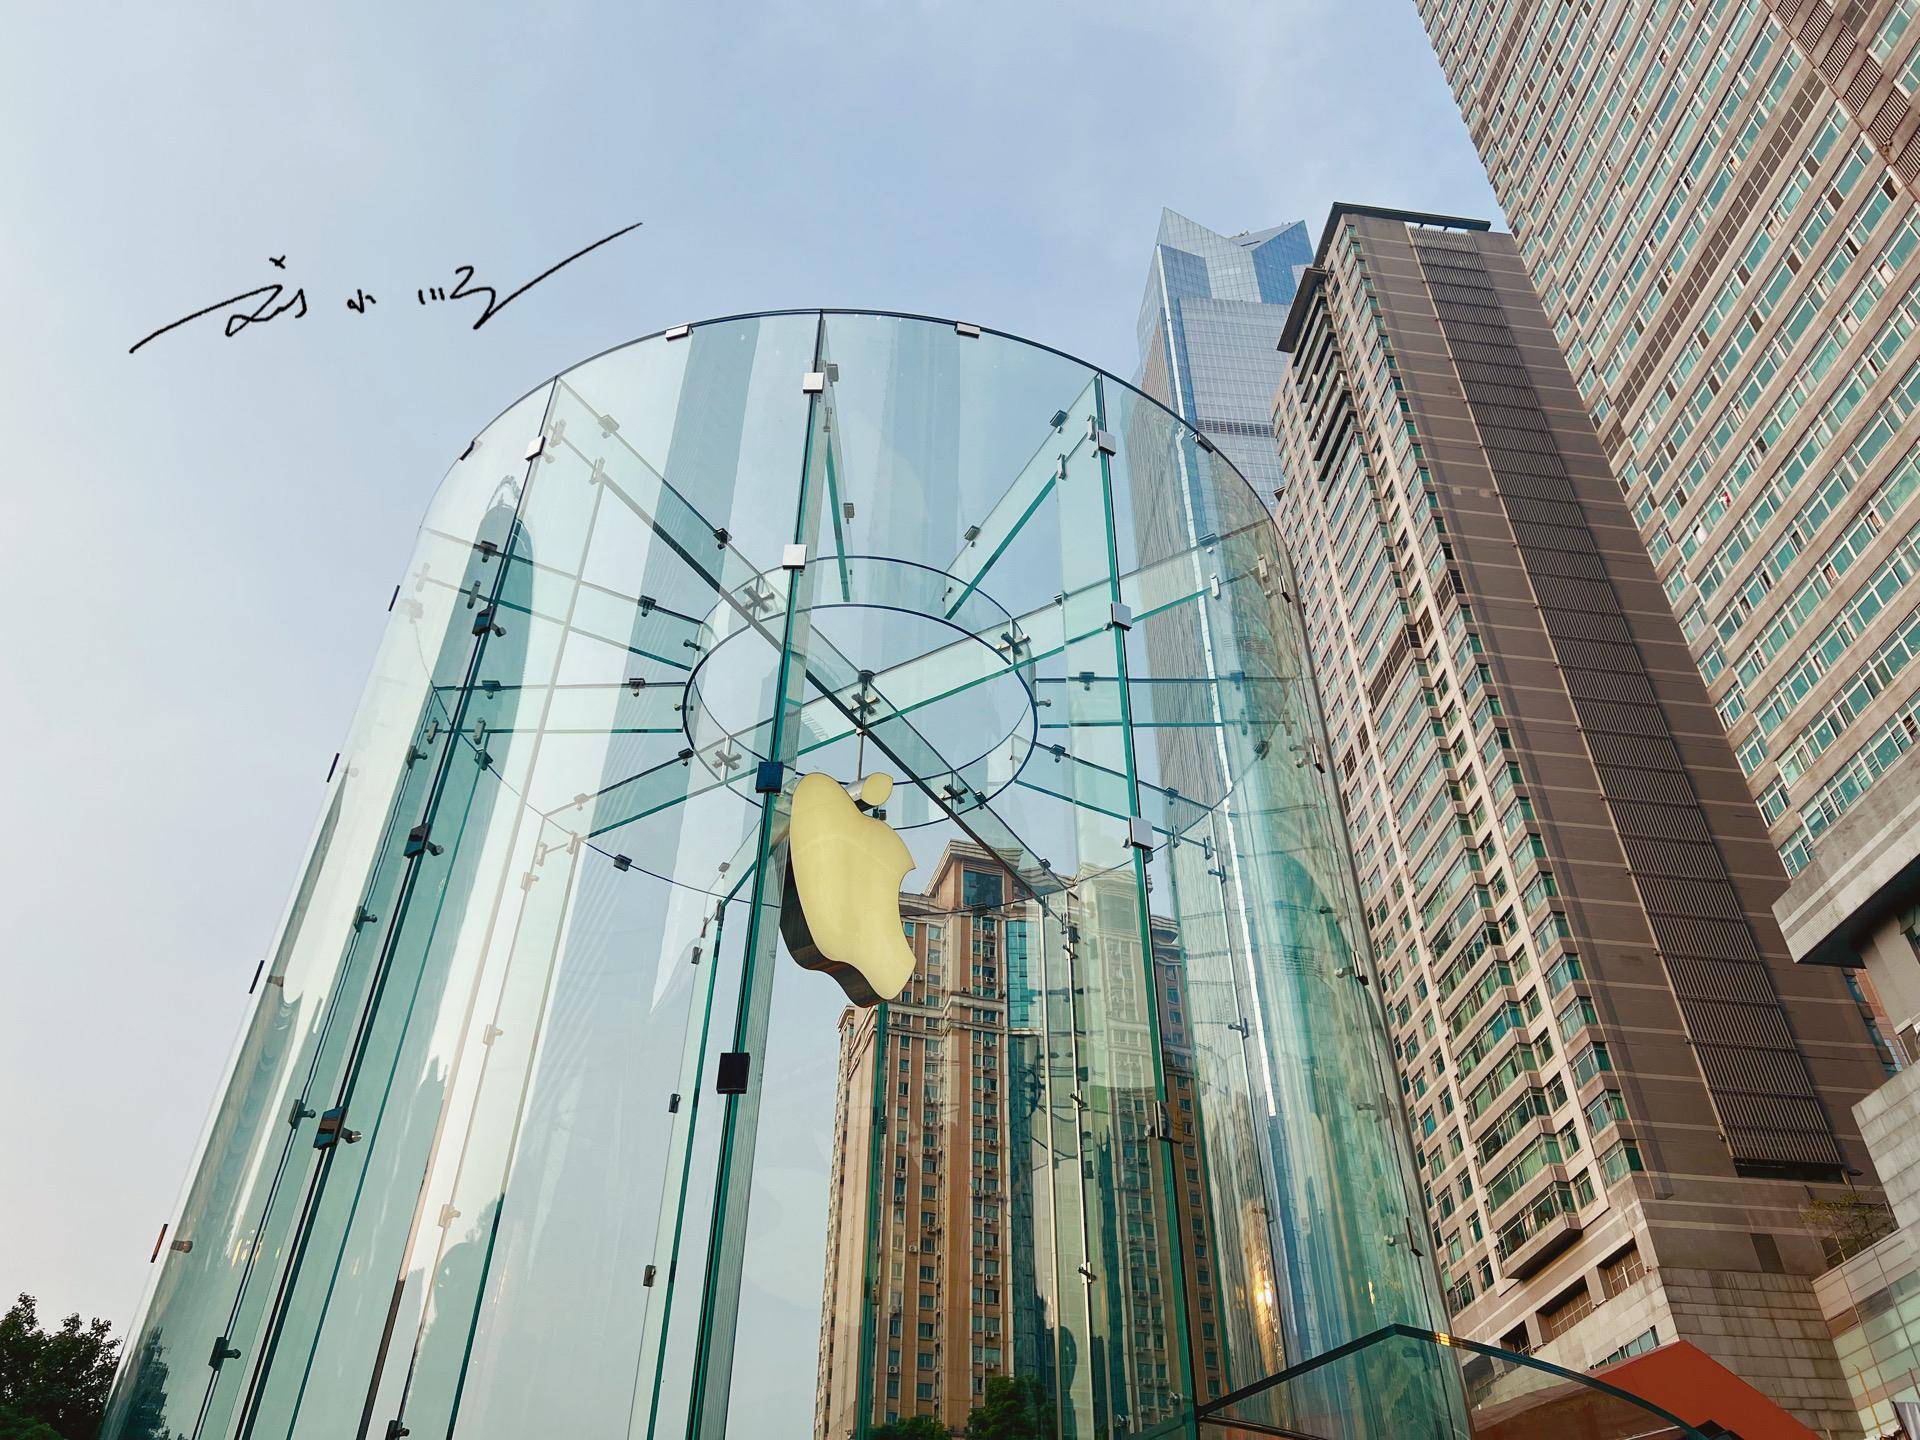 原创重庆有家网红苹果专卖店玻璃入口吸引眼球却被批评是模仿